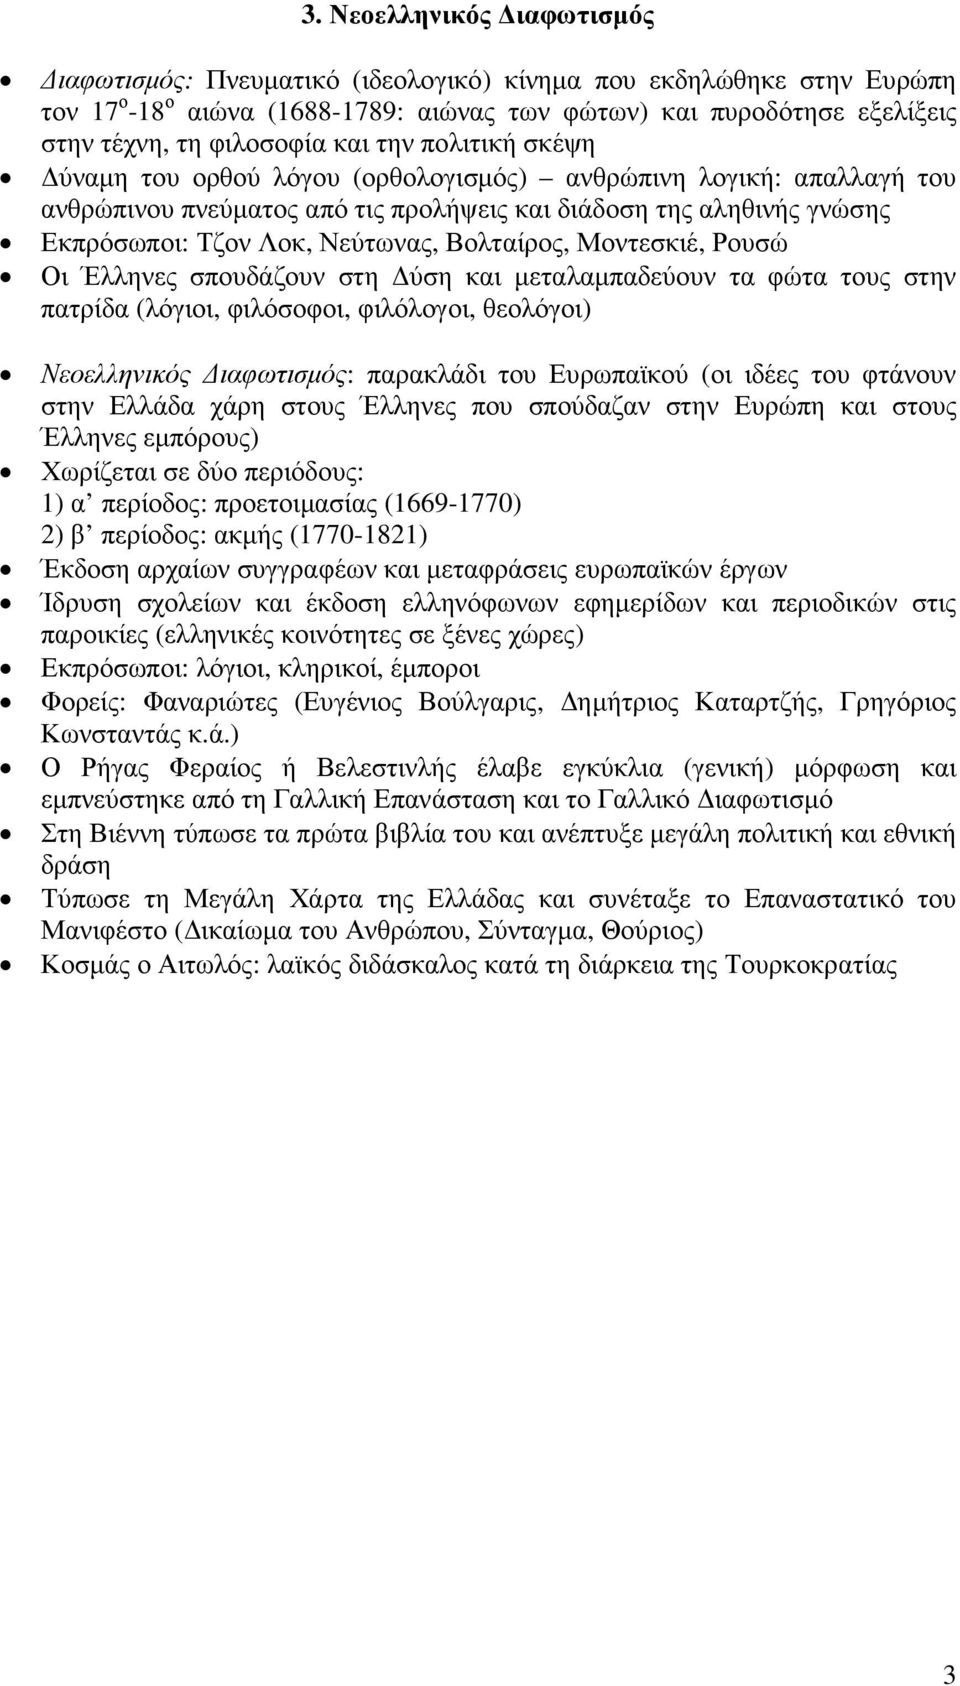 Βολταίρος, Μοντεσκιέ, Ρουσώ Οι Έλληνες σπουδάζουν στη ύση και µεταλαµπαδεύουν τα φώτα τους στην πατρίδα (λόγιοι, φιλόσοφοι, φιλόλογοι, θεολόγοι) Νεοελληνικός ιαφωτισµός: παρακλάδι του Ευρωπαϊκού (οι